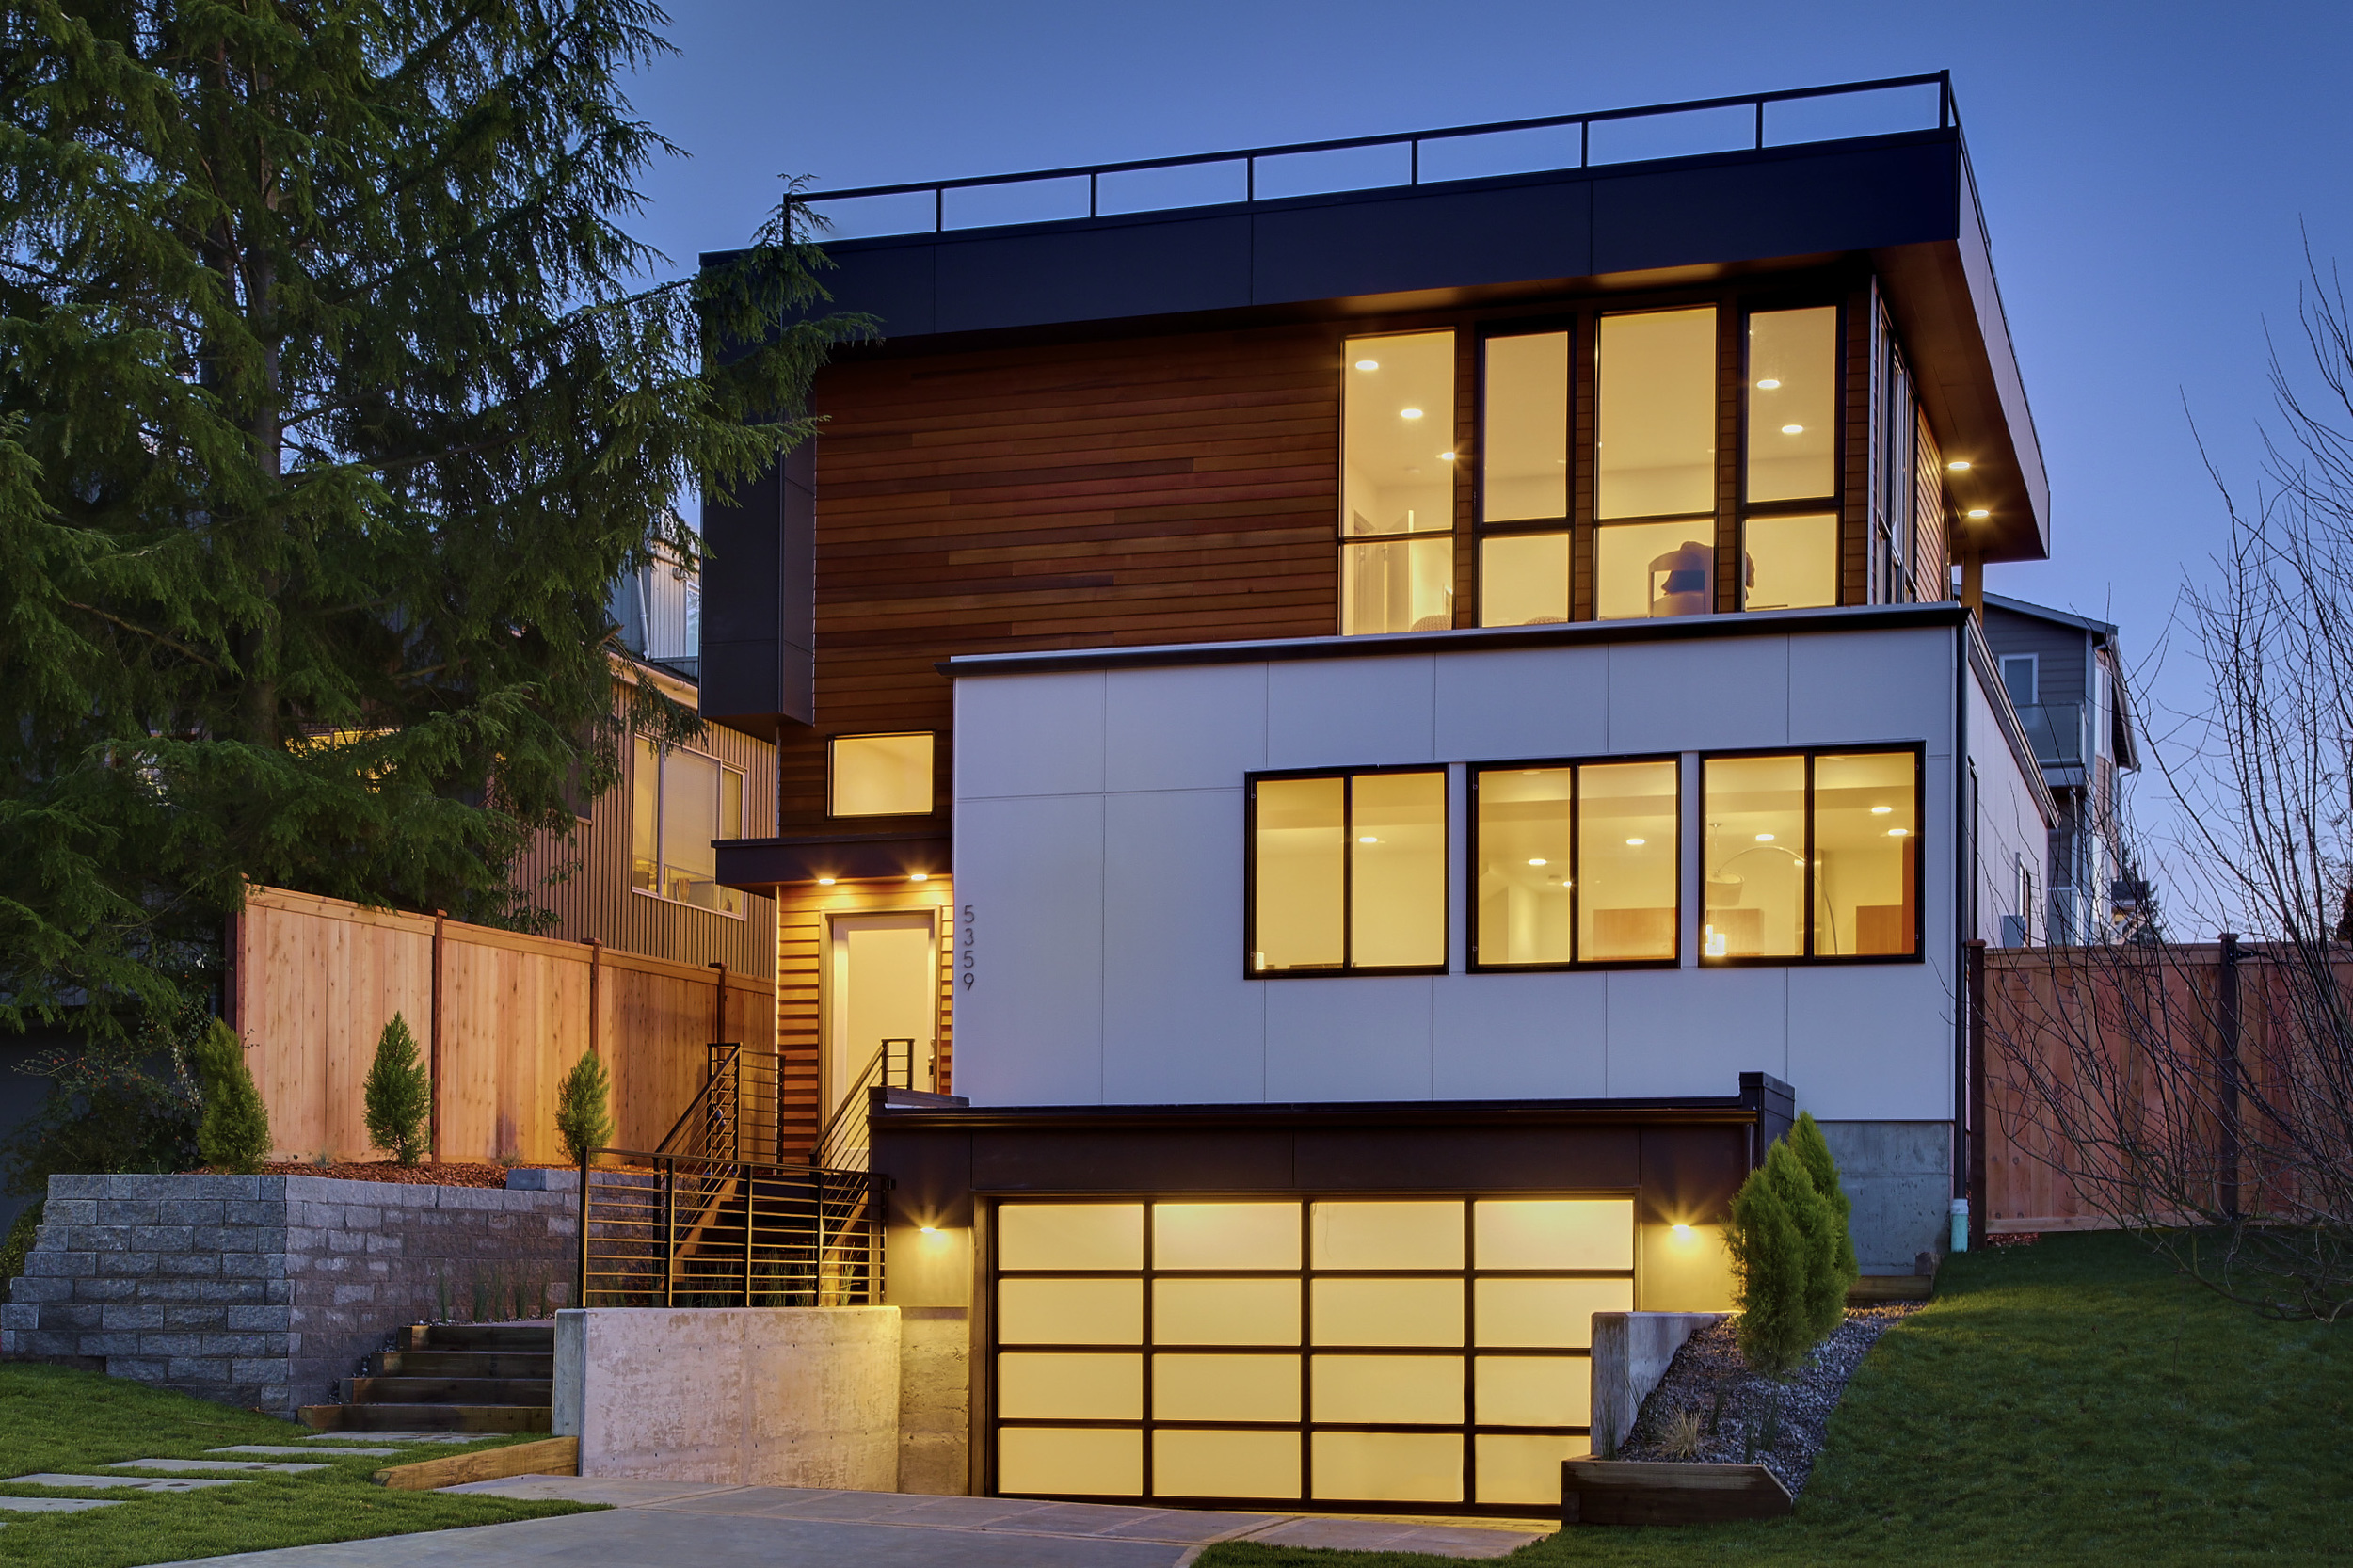 James-Stewart-Seattle-Washington-Architecture.jpg